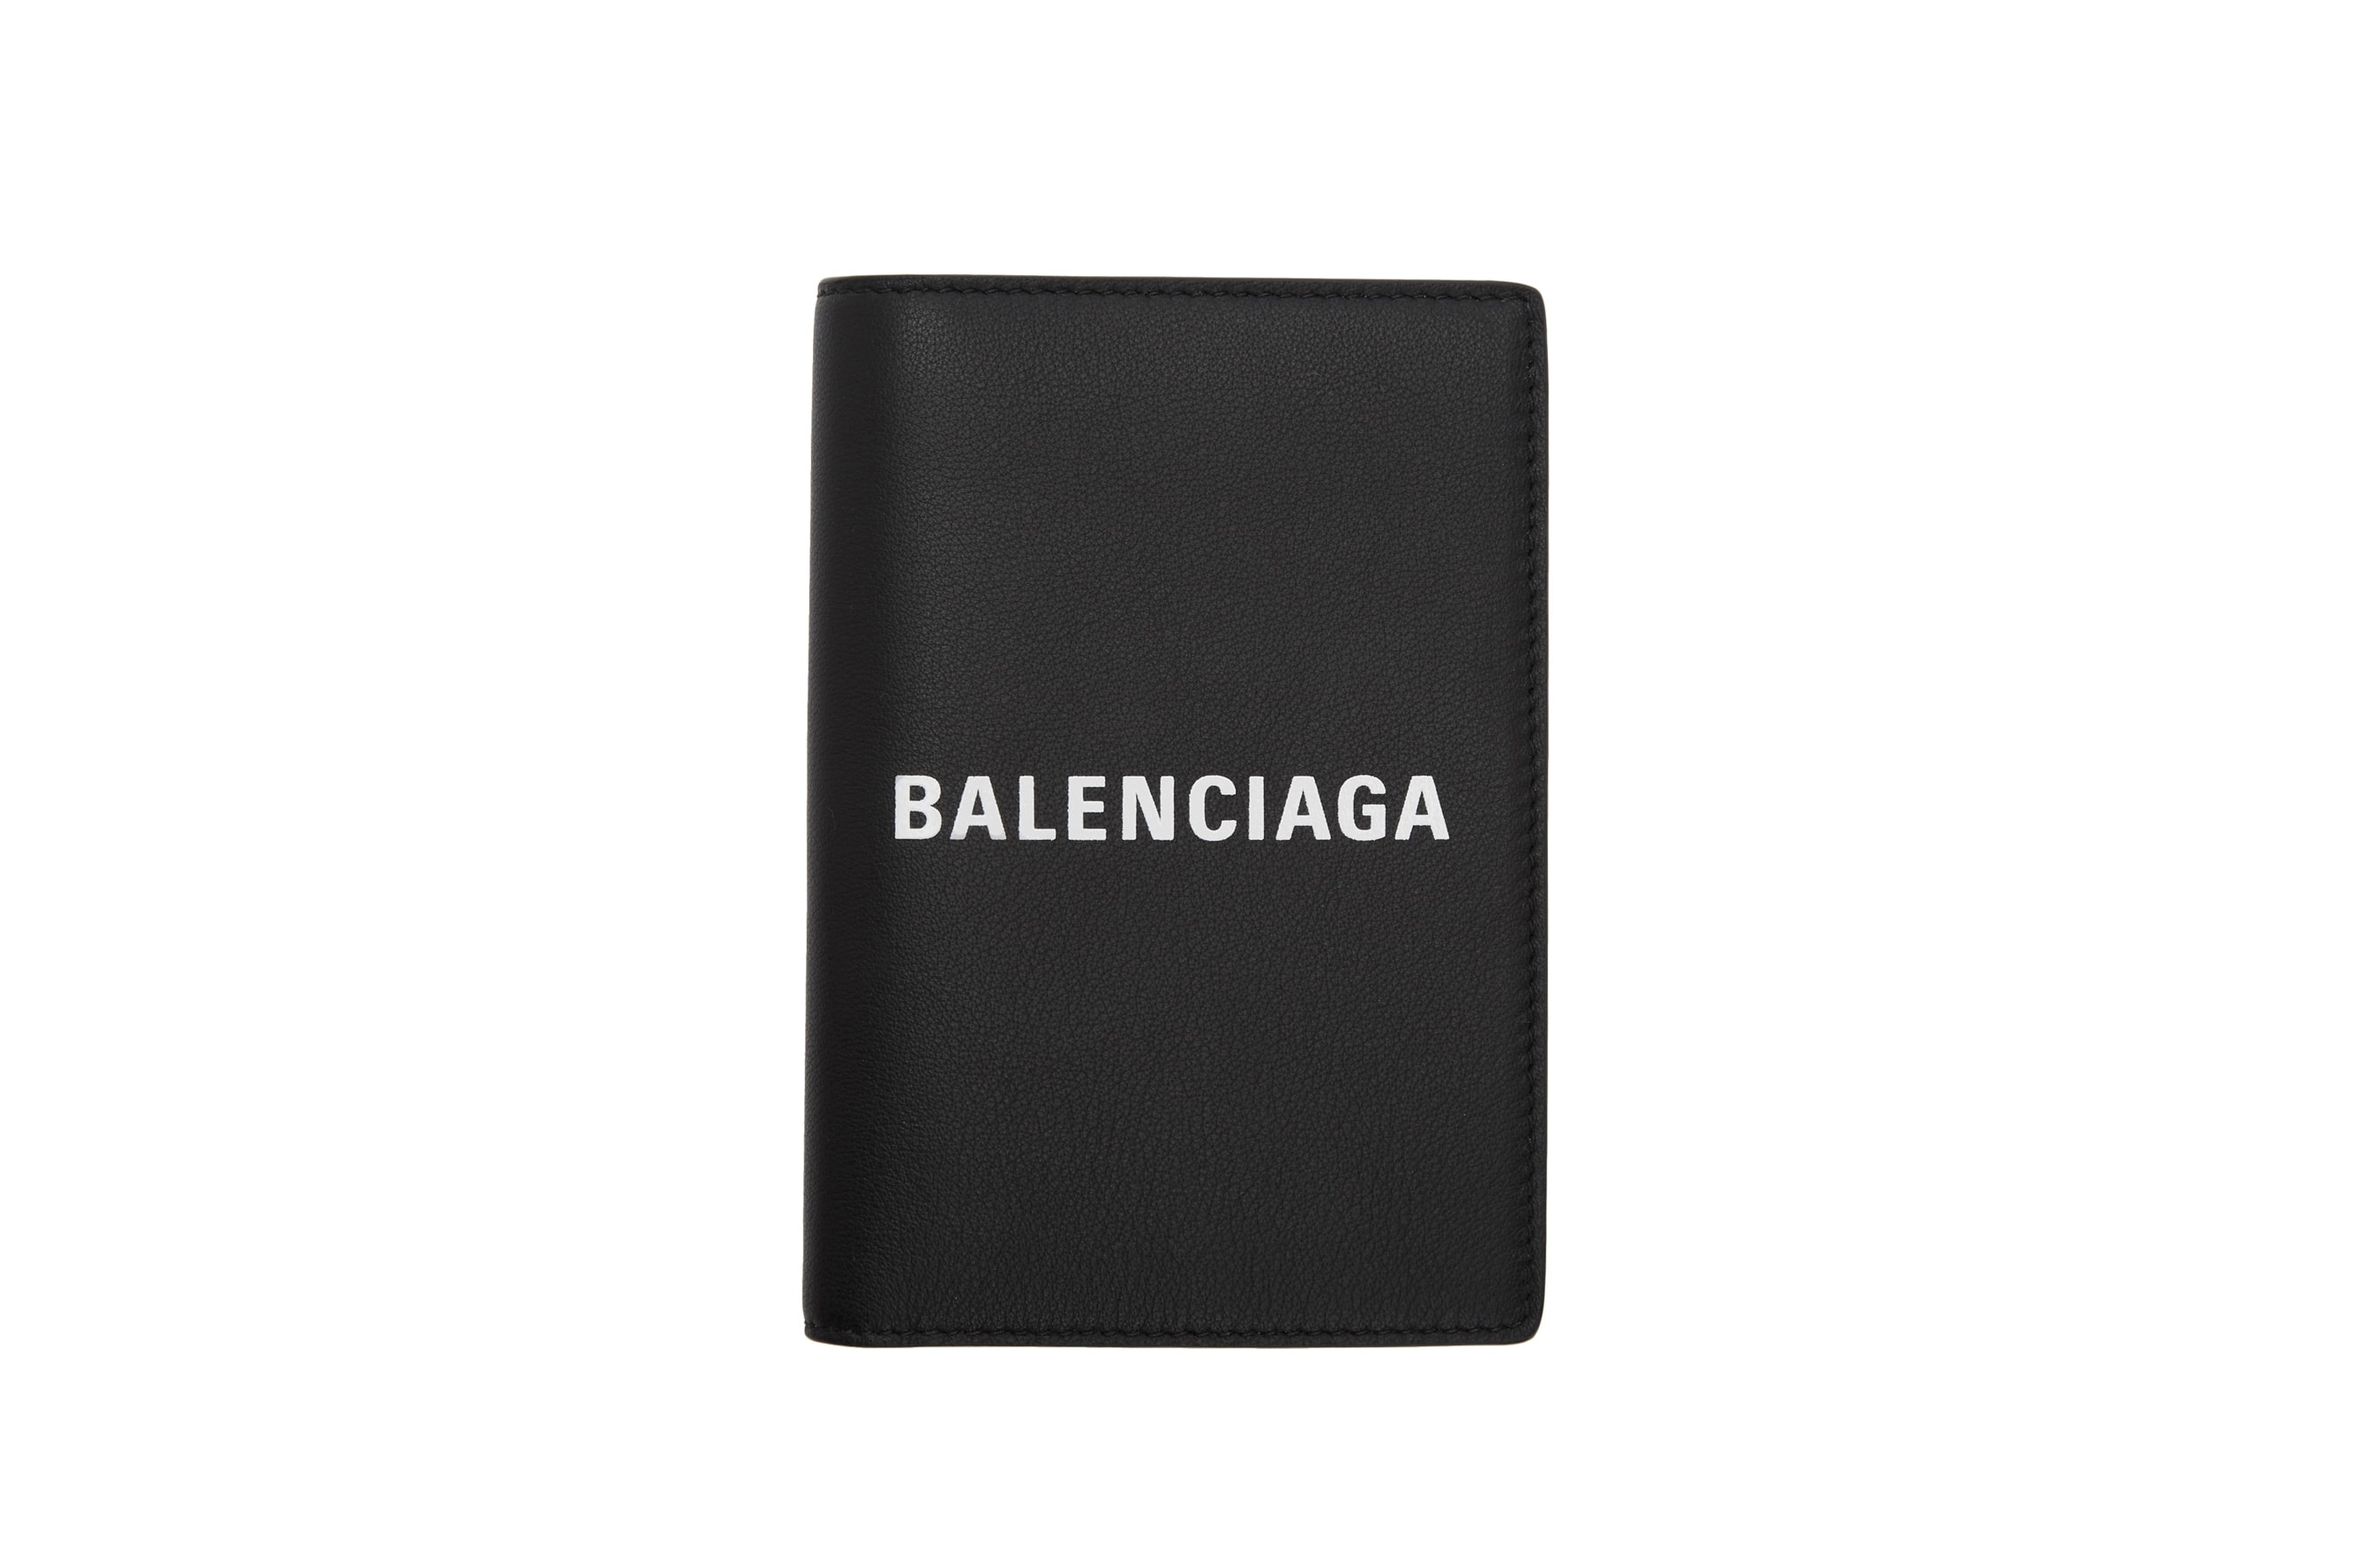 Balenciaga Logo Tote Bag Wallet Accessories Passport Case